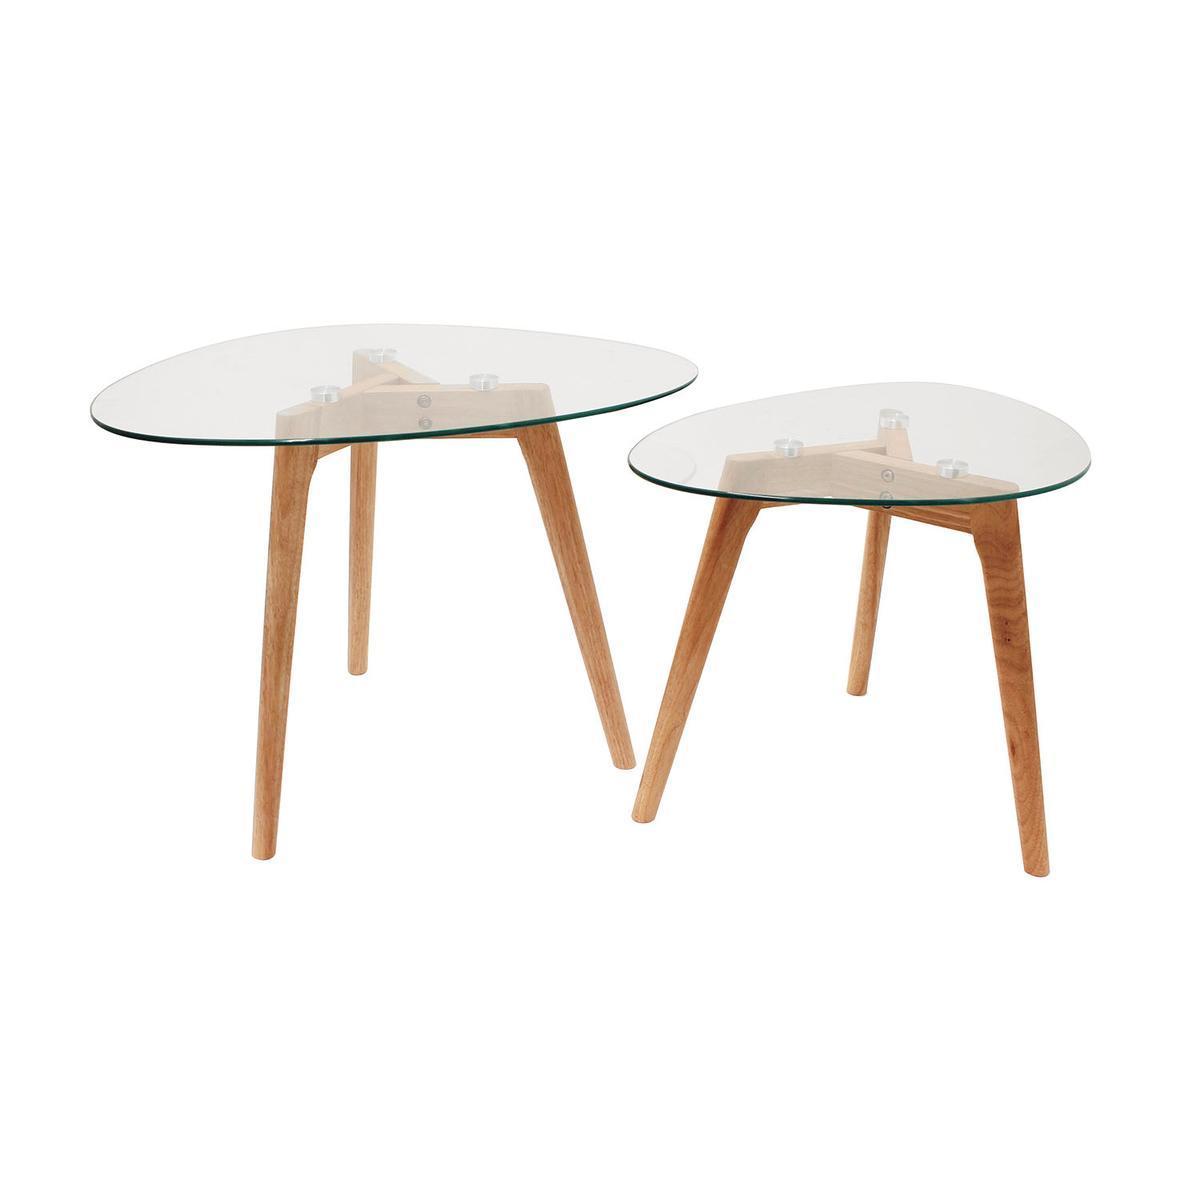 Duo de tables gigognes plateau galet en verre trempé - Grande table : 60 x 45 x 43 cm/ Petite table : 50 x 38 x 40 cm - Transparent, marron - HOME DECO FACTORY